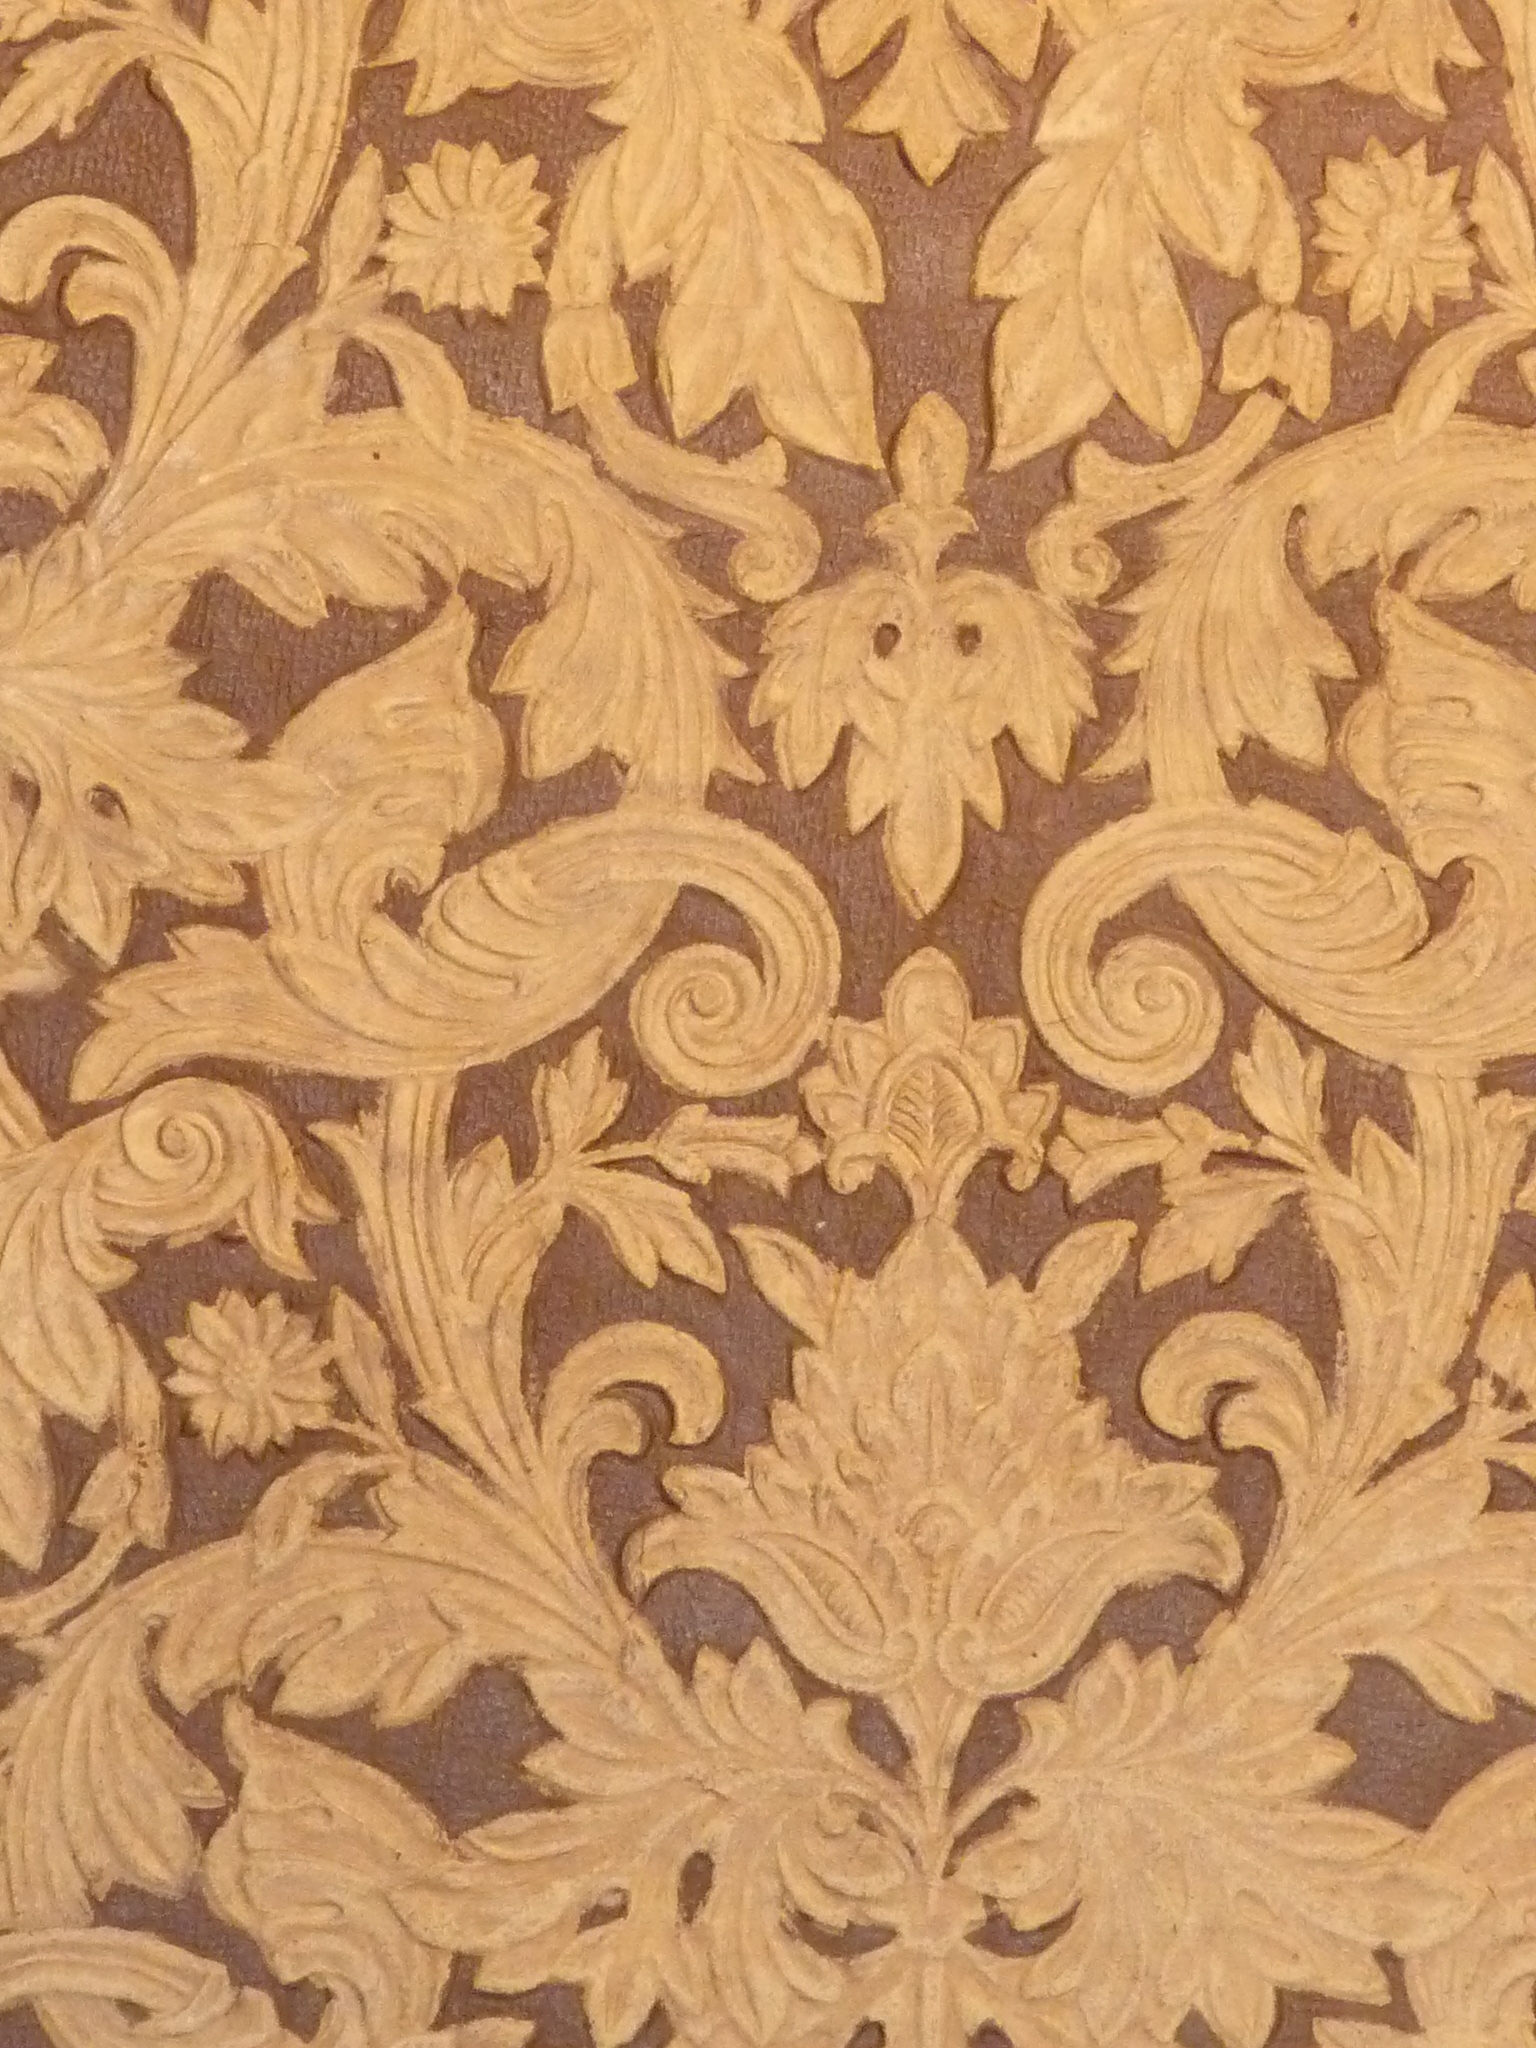 小部屋の天井には比較的細かい模様の金唐革紙が施されている